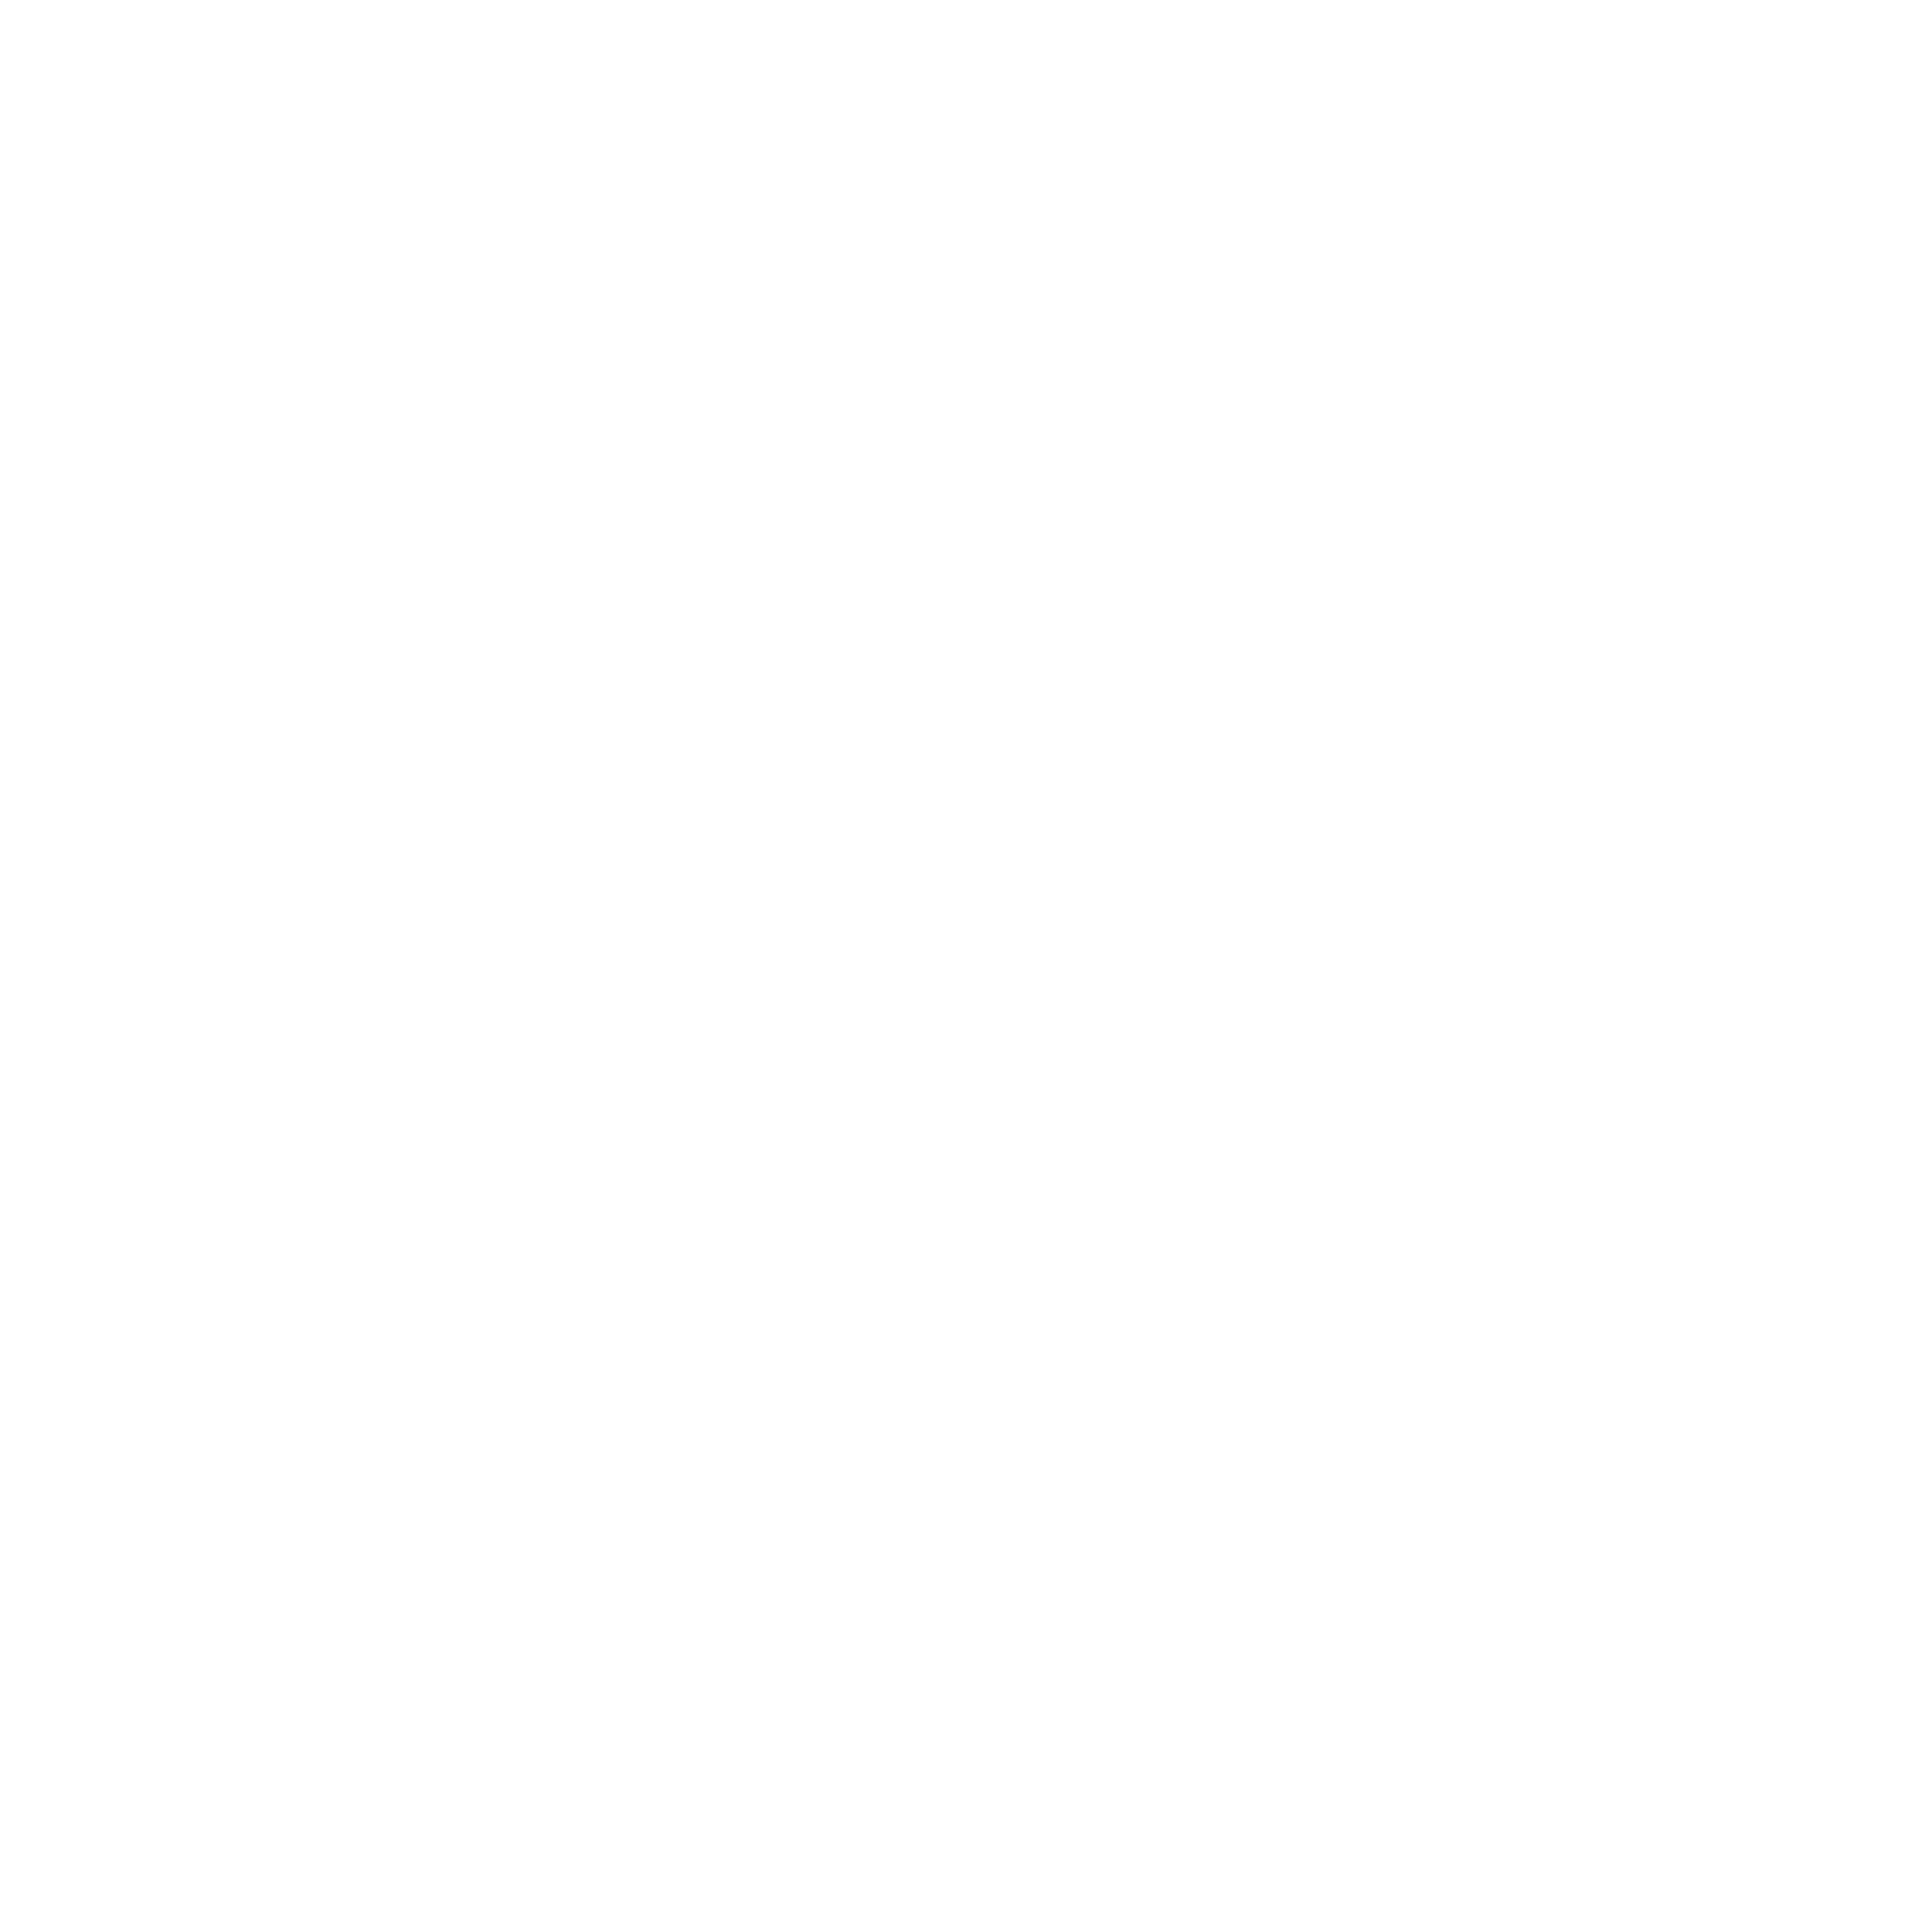 Rip Tits